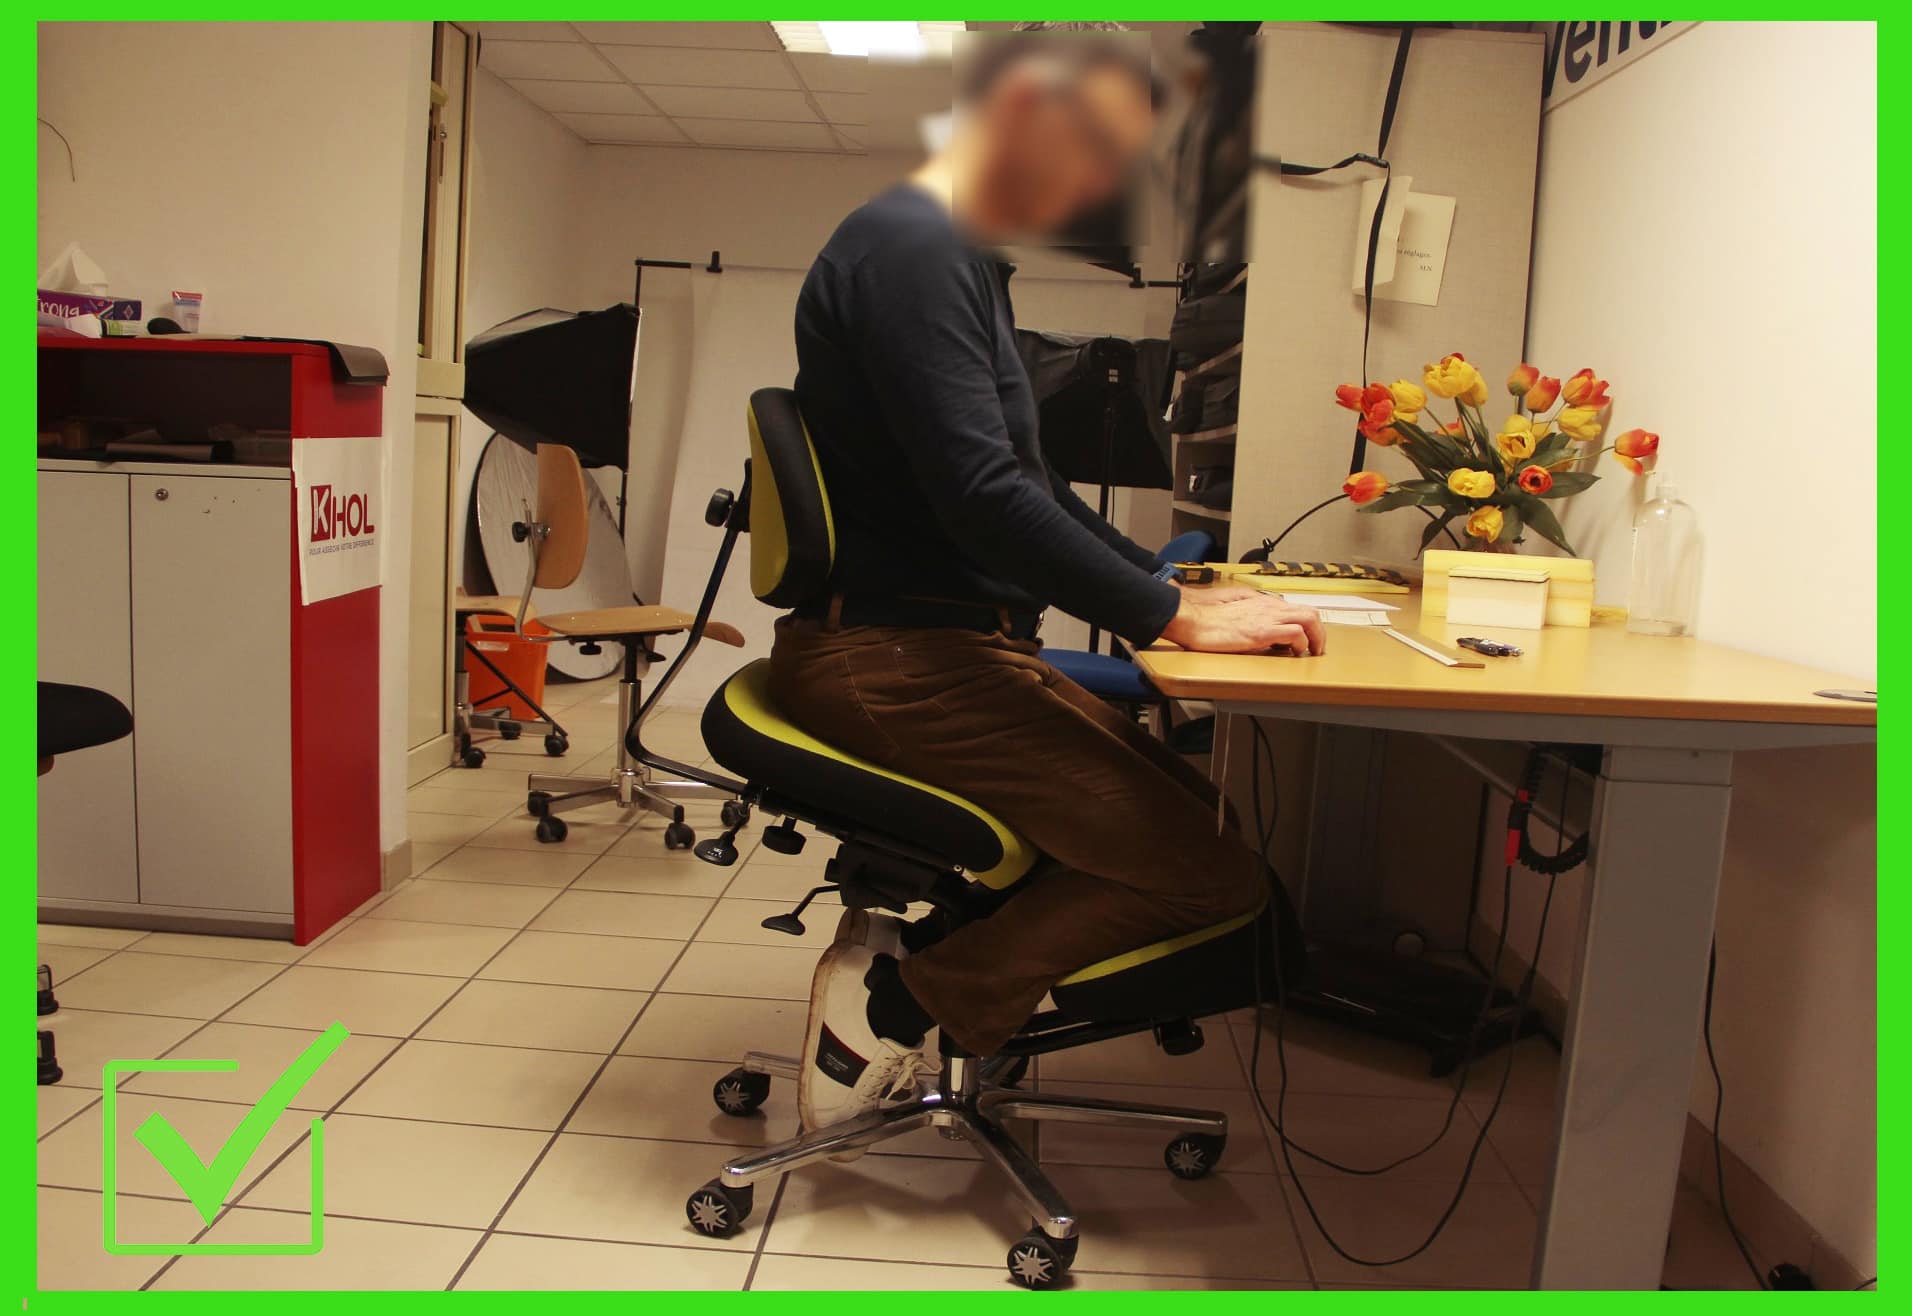 ASSIS-GENOUX-BLOIS-FLOUTE Les sièges assis-genoux permettent la rectification de la posture de travail